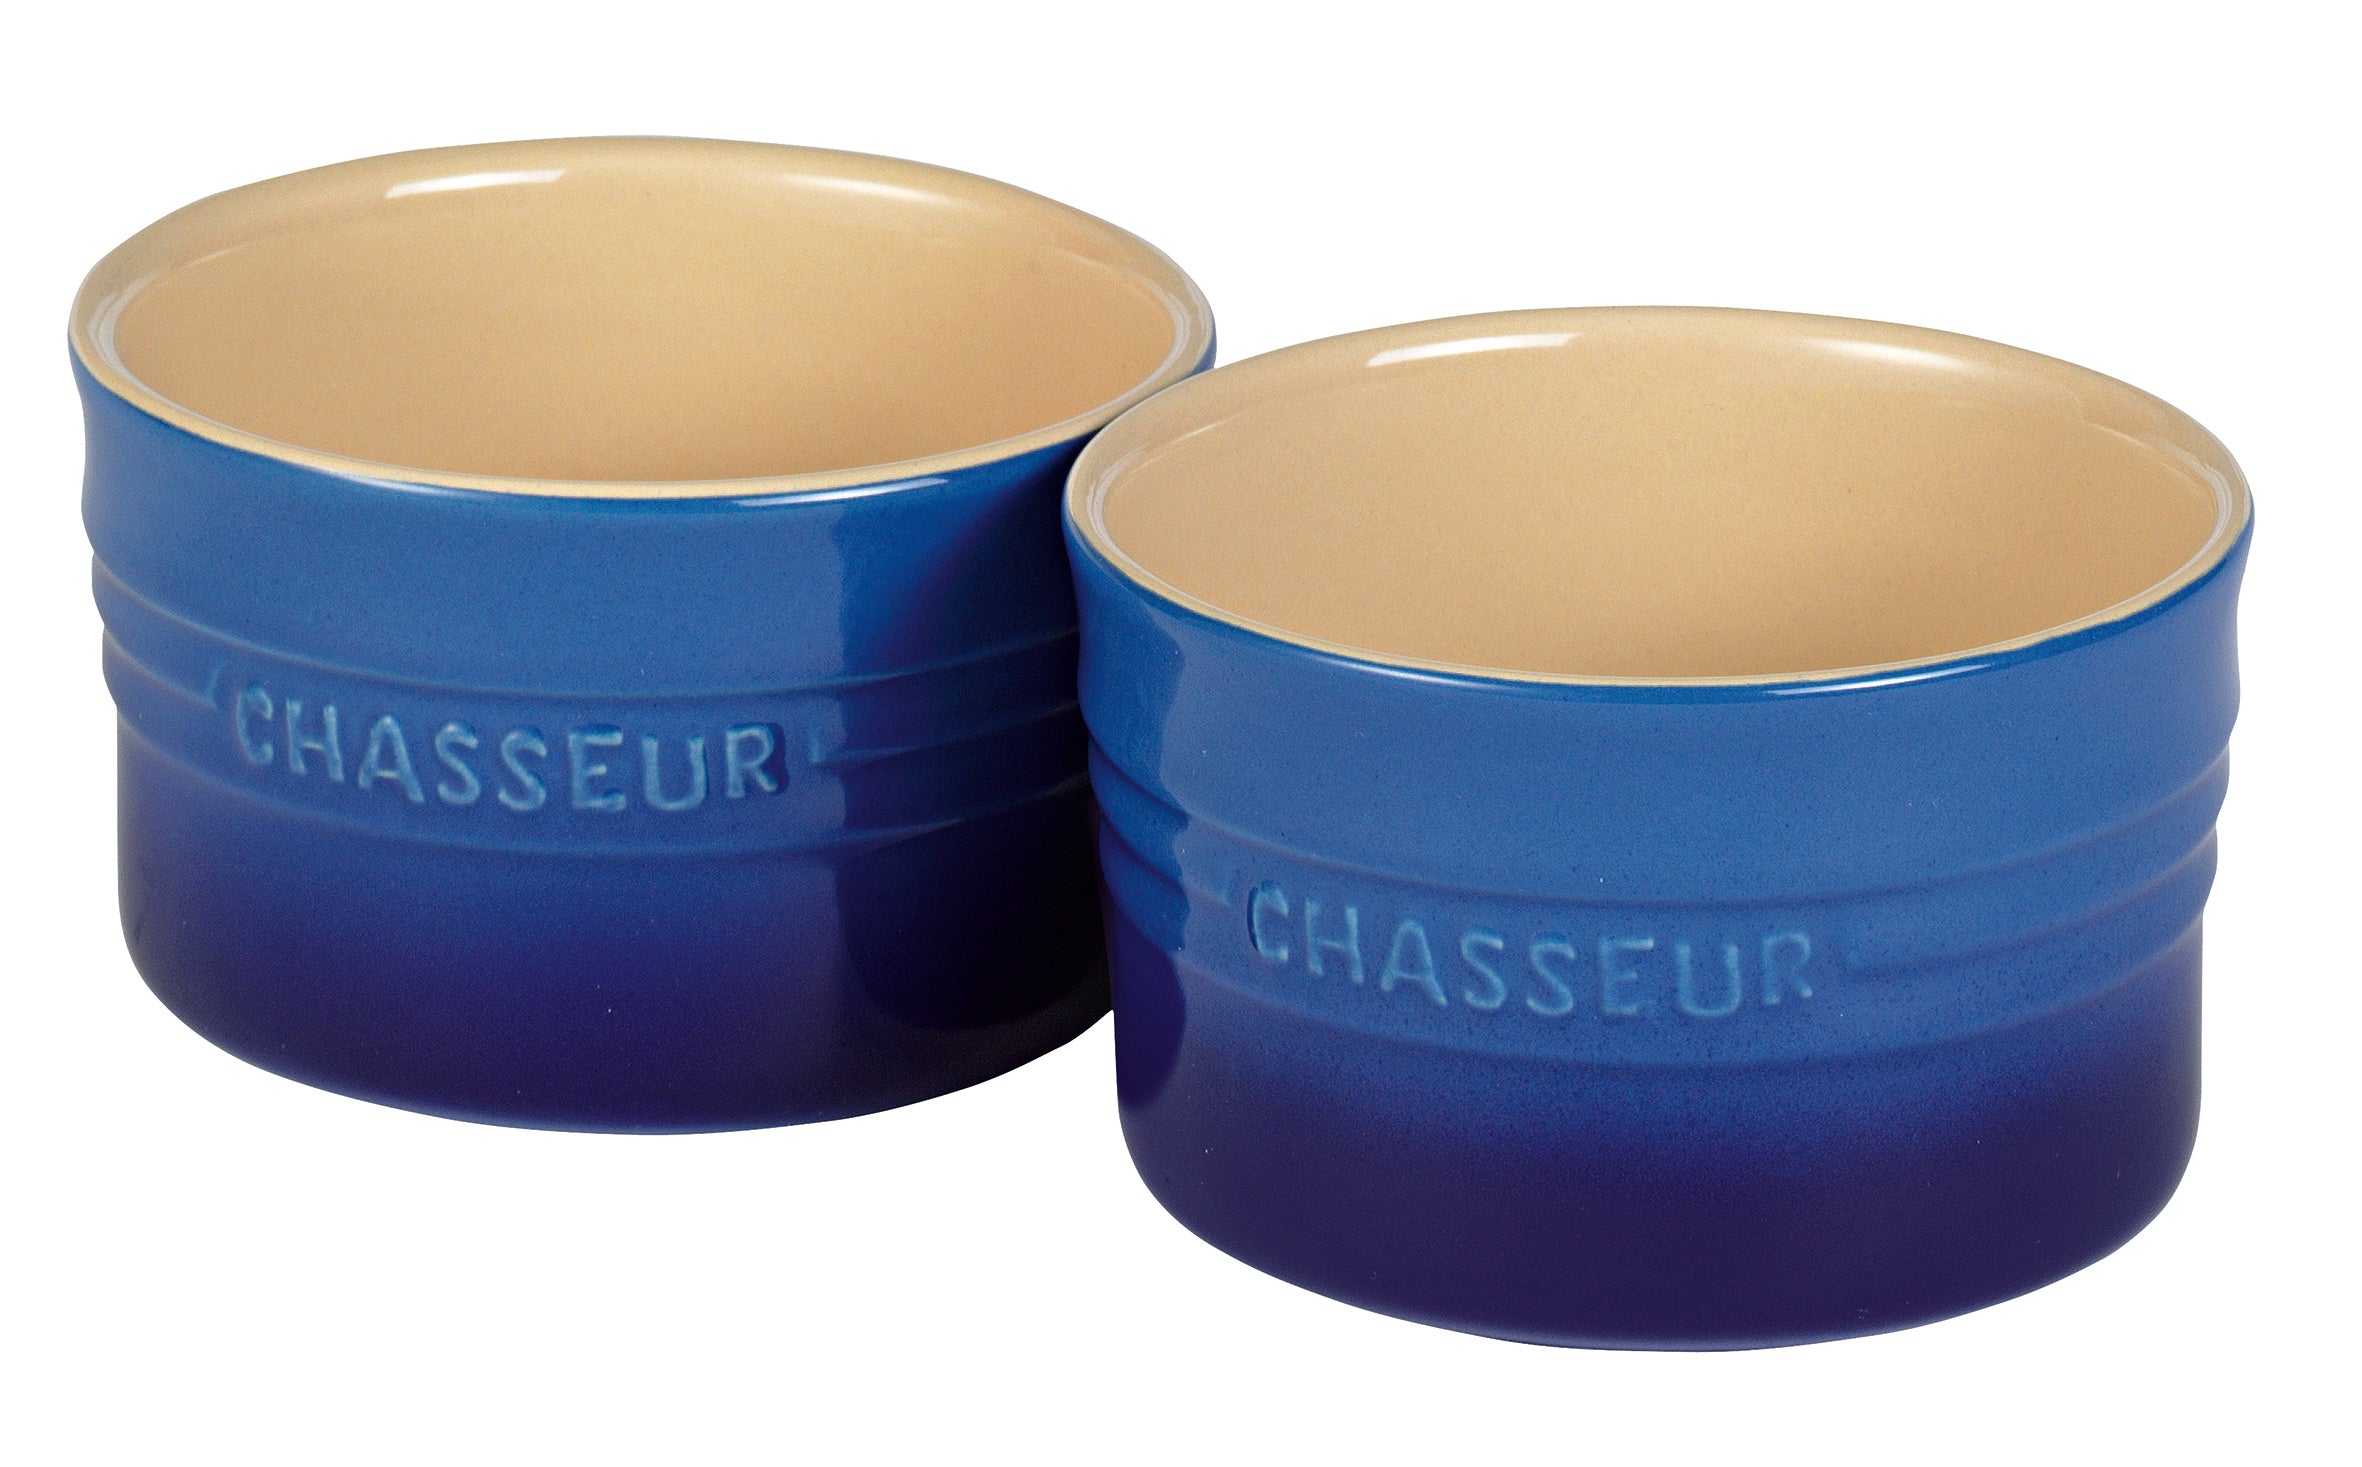 Chasseur Ramekin 280ml Set of 2 - Blue